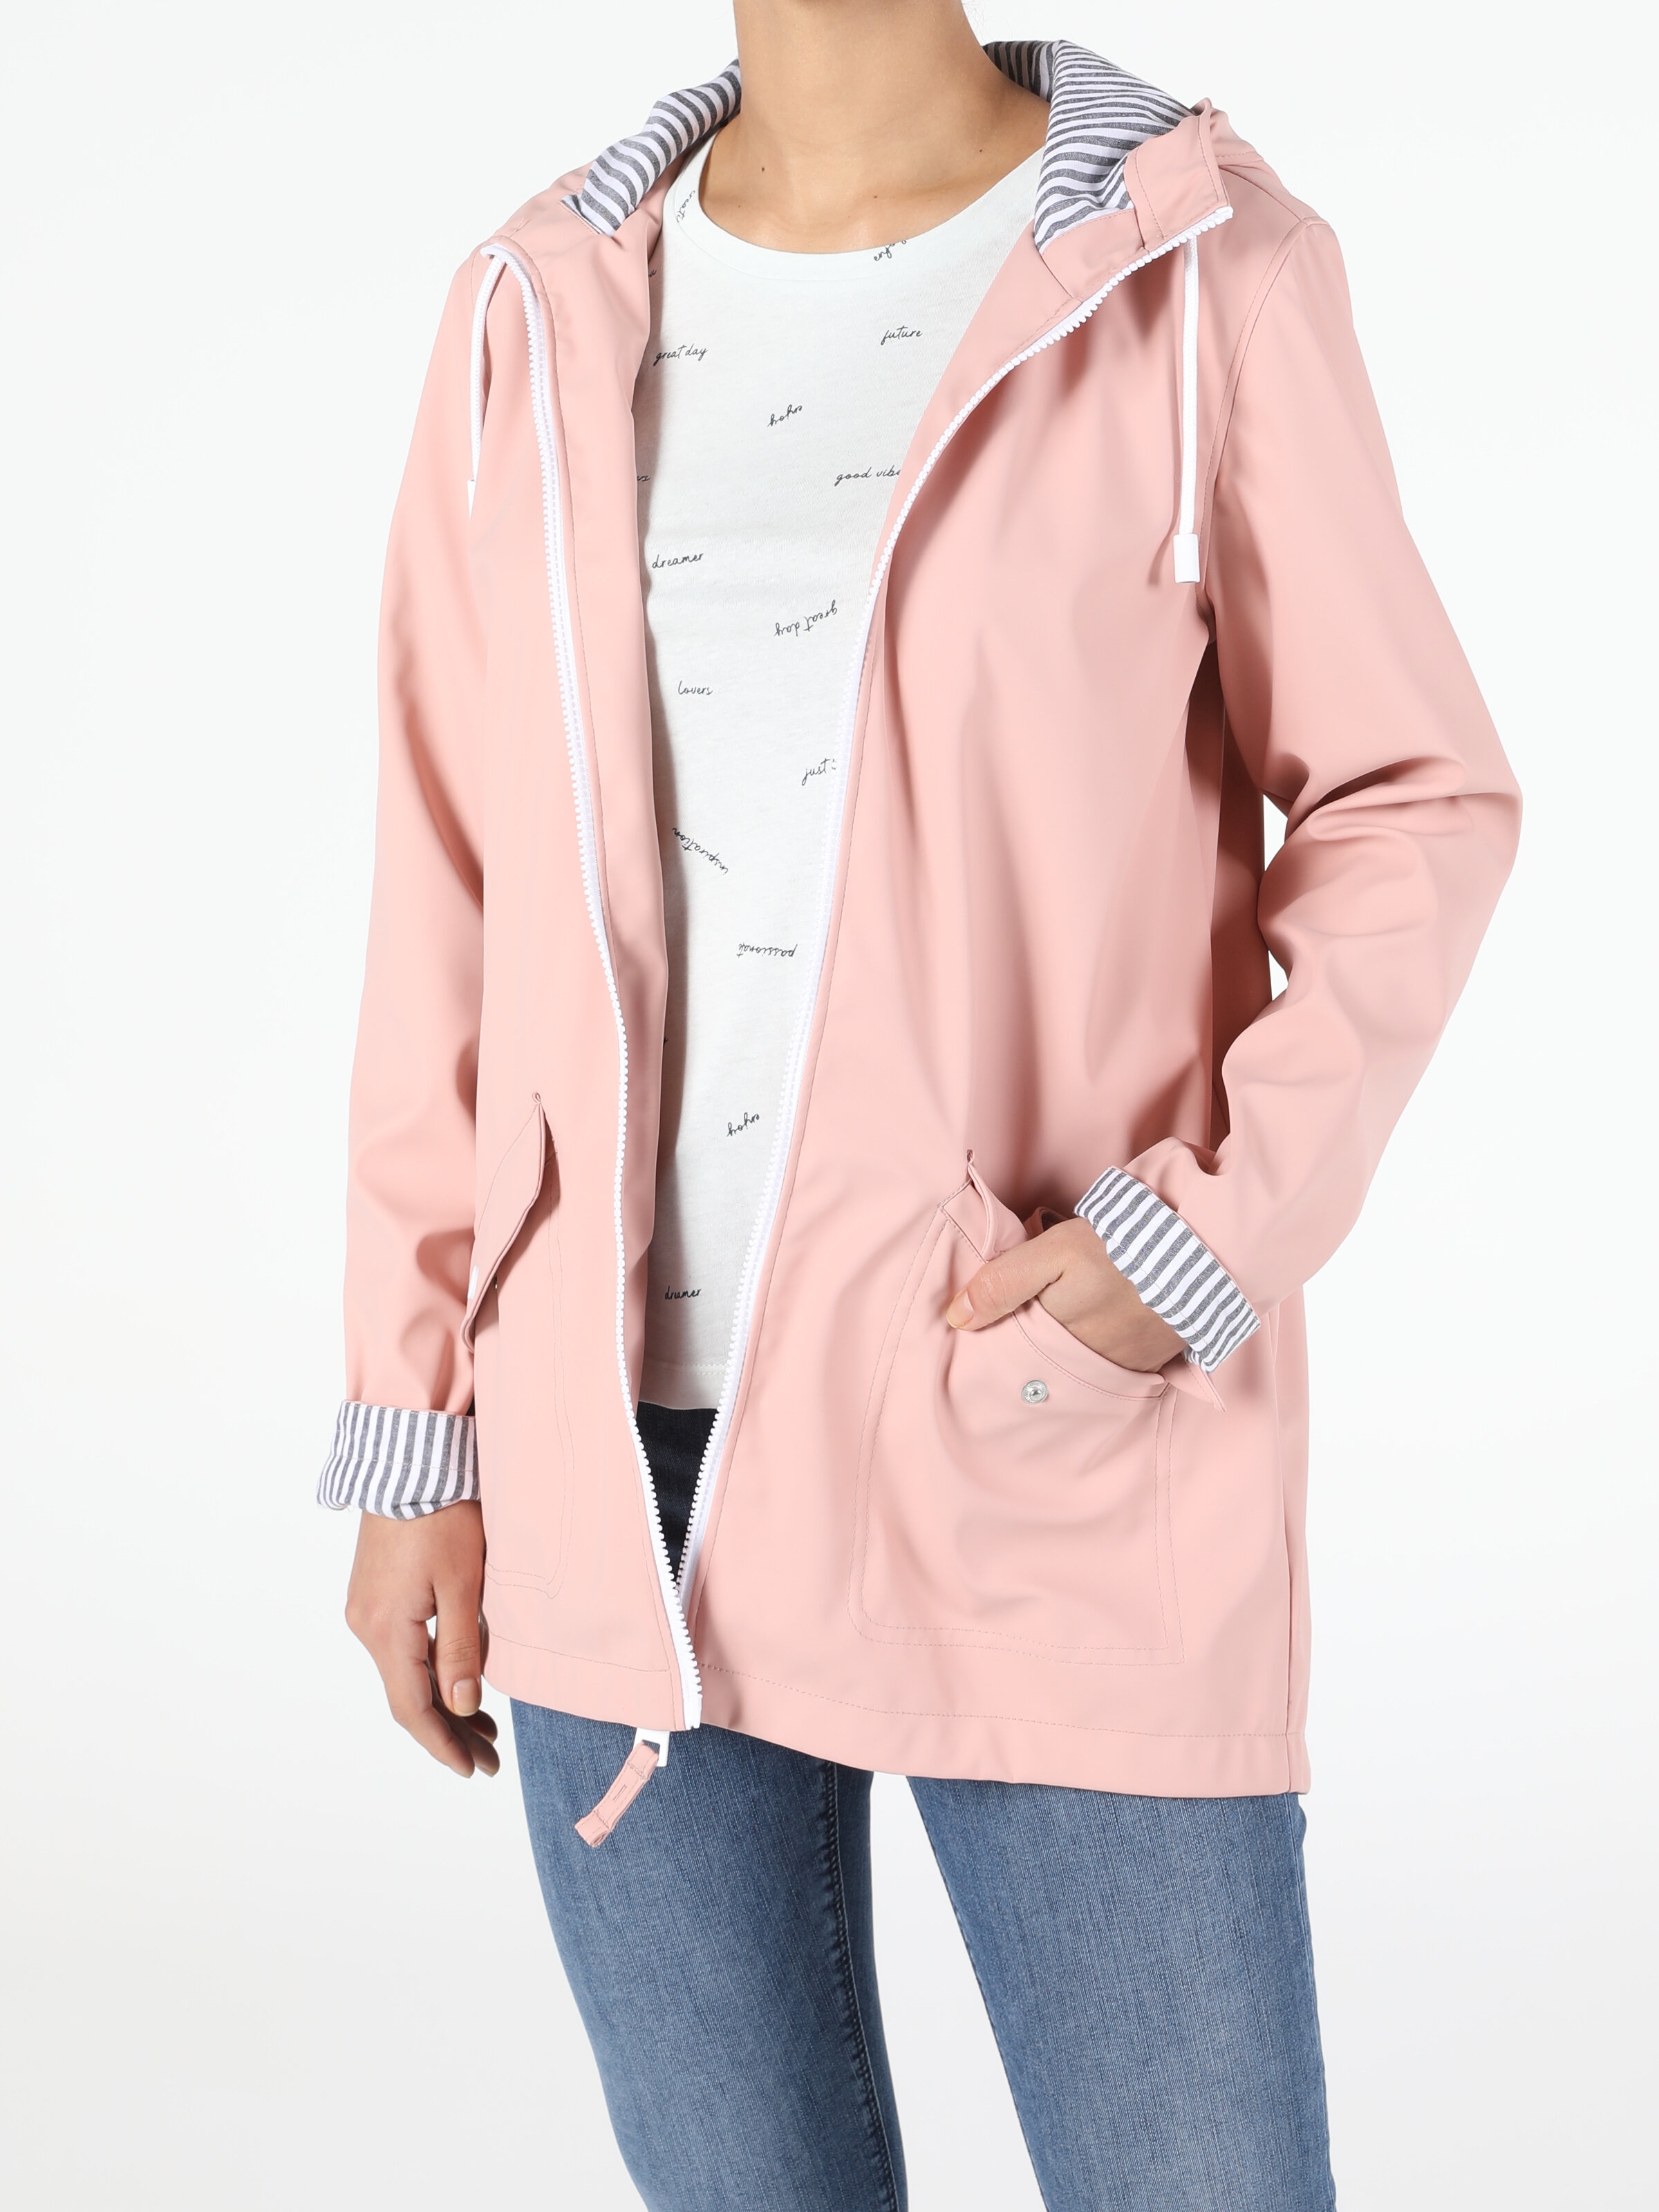 Показати інформацію про Куртка З Еко-Шкіри Жіноча Рожева Класичного Крою Cl1052492